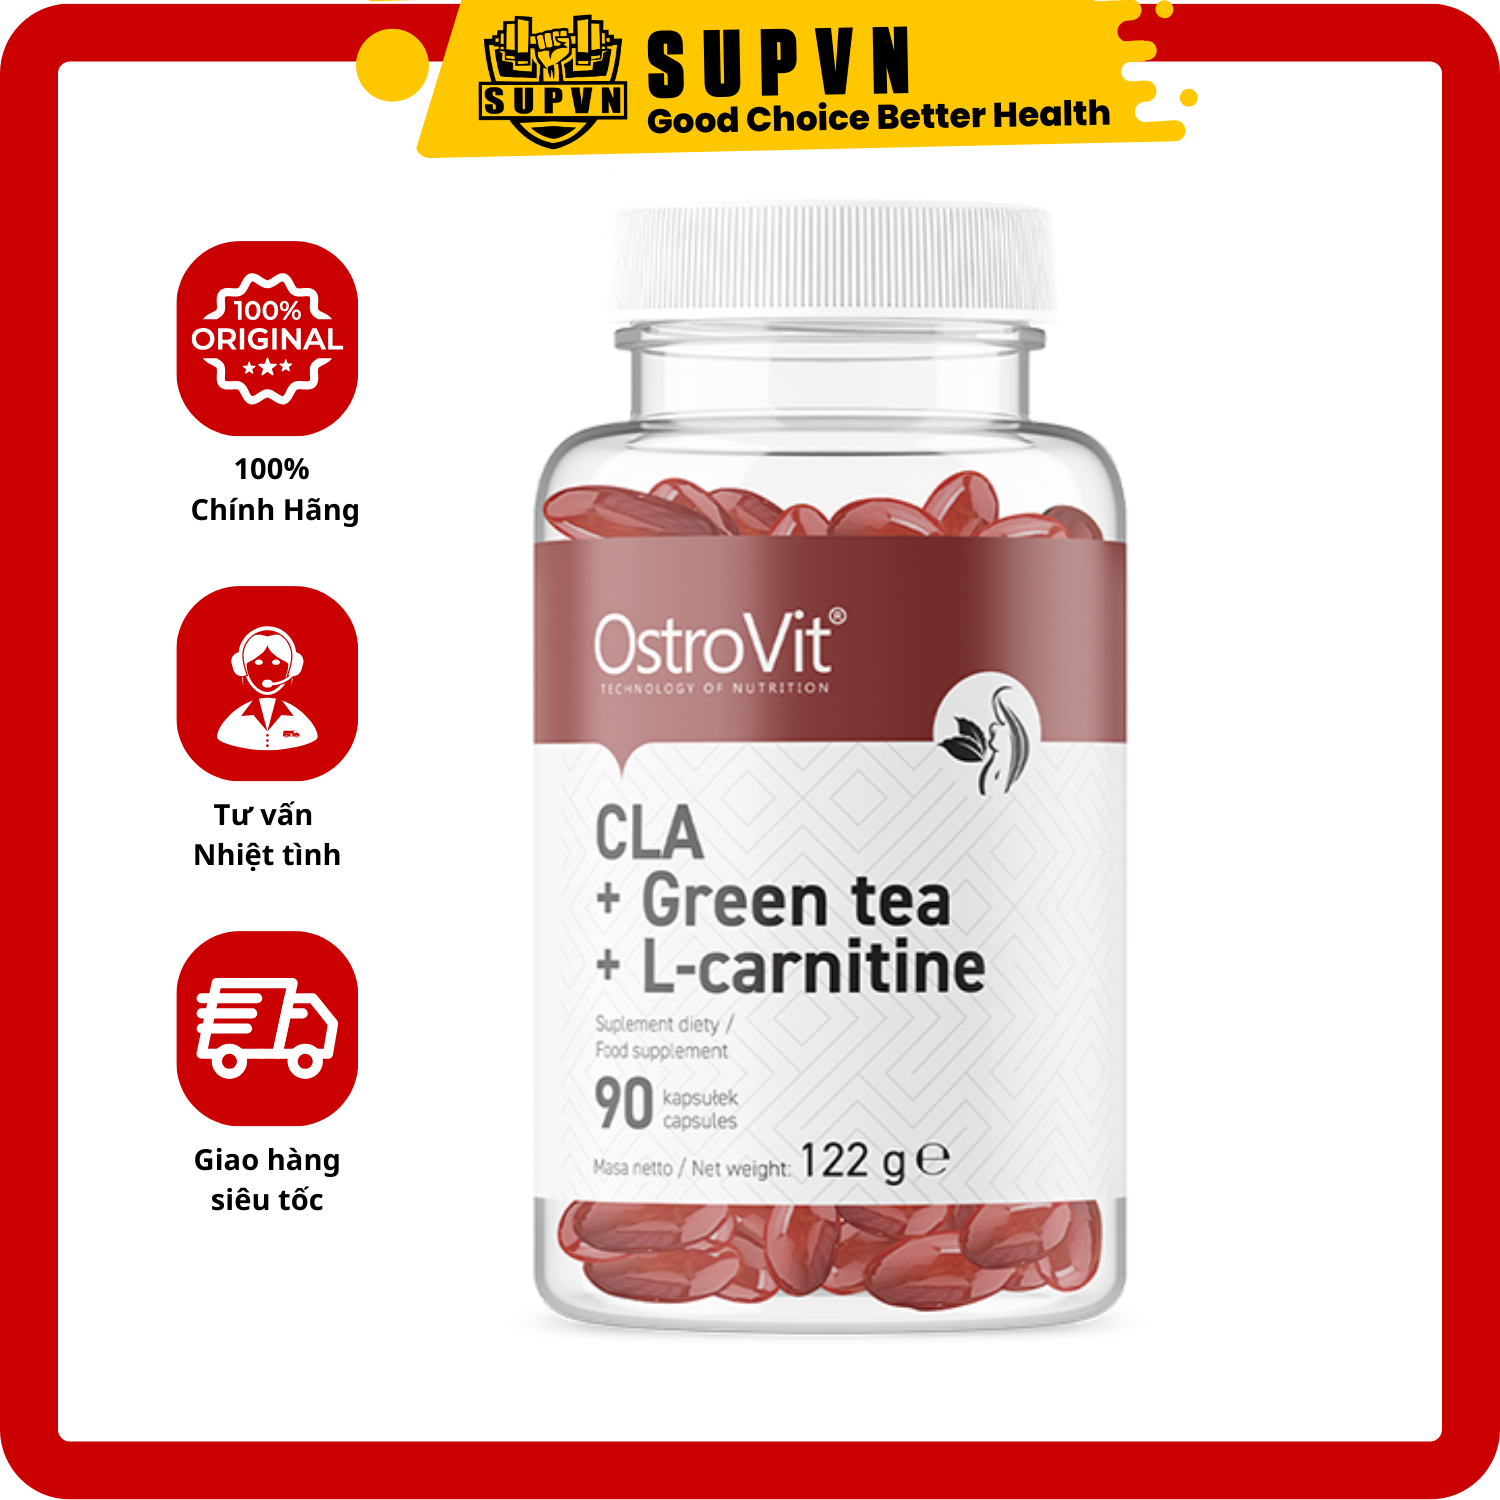 Viên đốt mỡ giảm cân Ostrovit Cla + Green Tea + L-carnitine (90 viên) - Hỗ trợ giảm mỡ trong tập gym